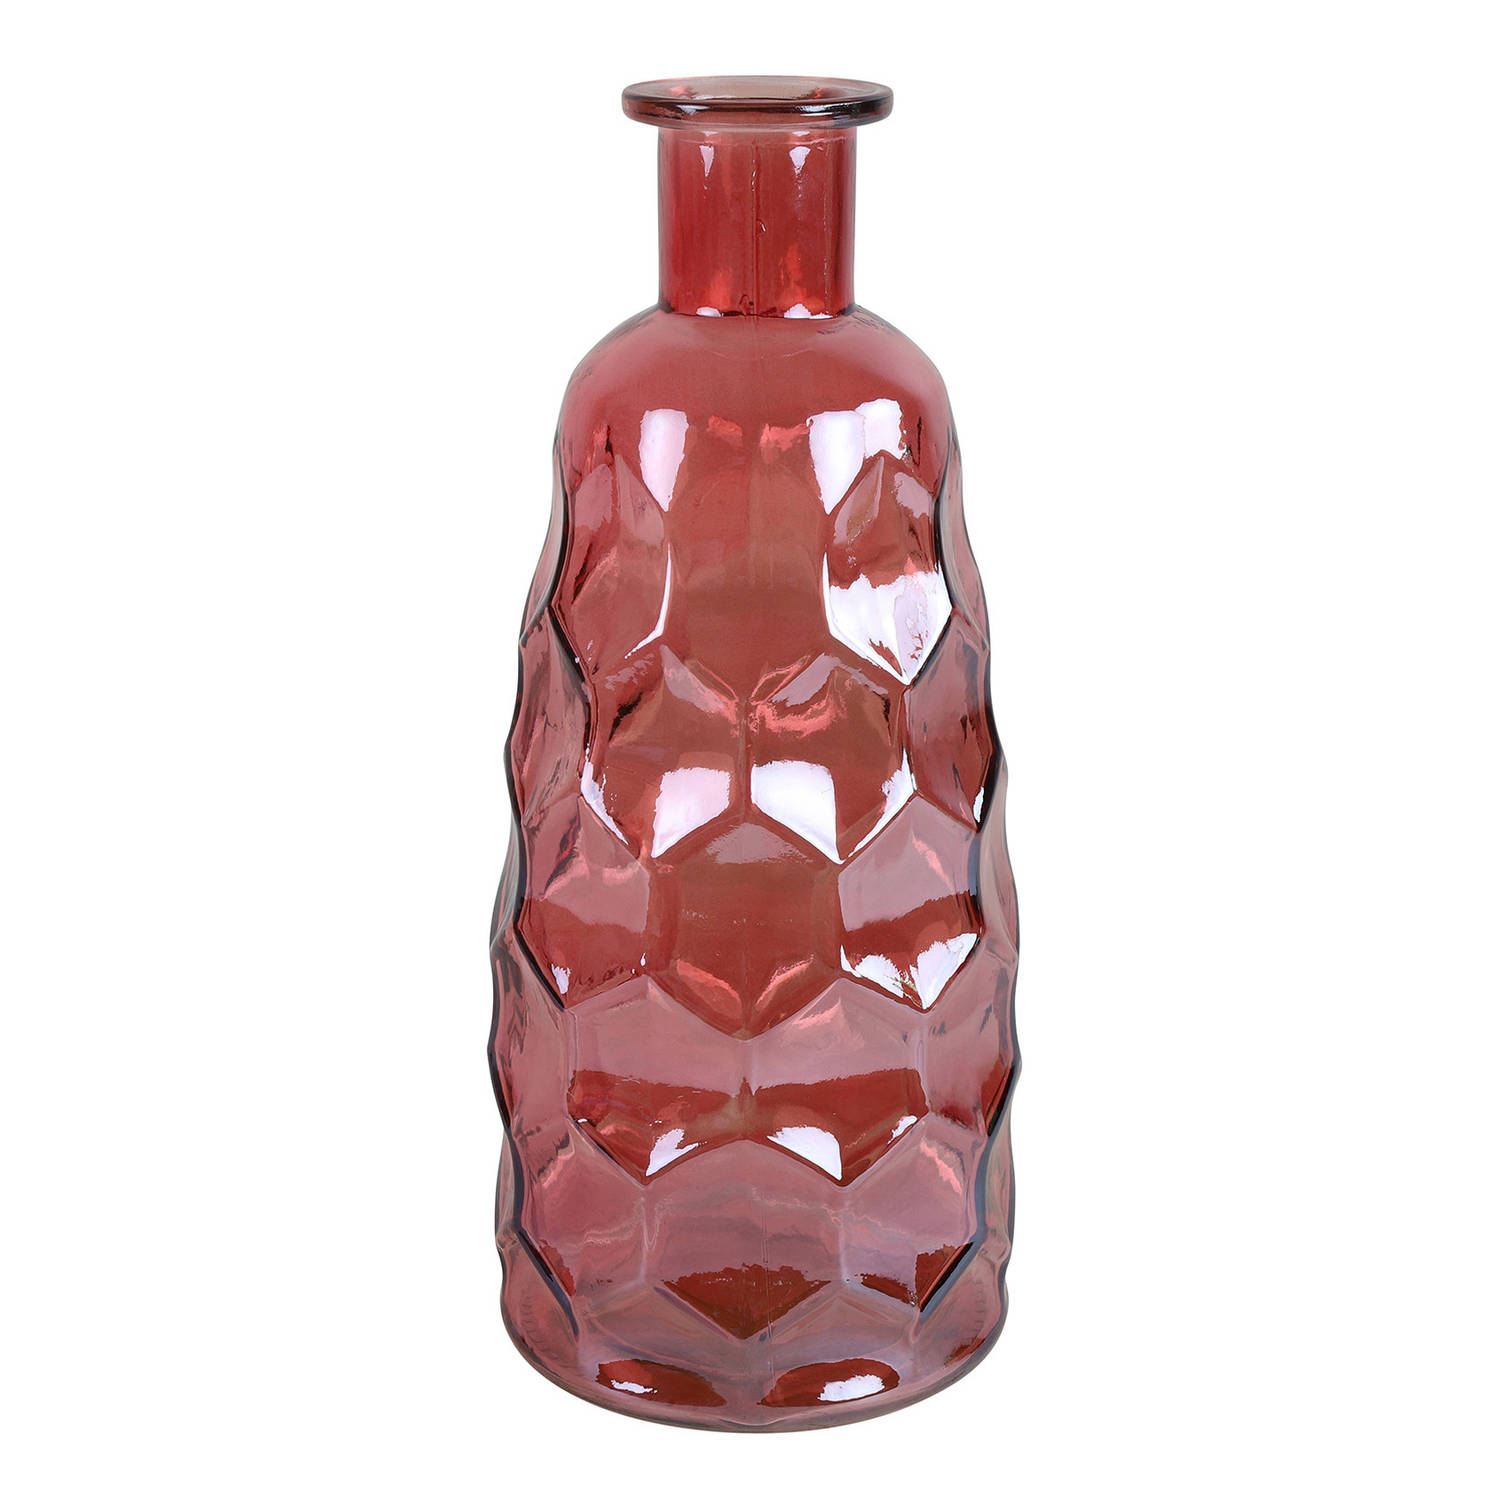 Countryfield Art Deco Bloemenvaas Donkerroze Transparant Glas Fles Vorm D12 X H30 Cm Vazen